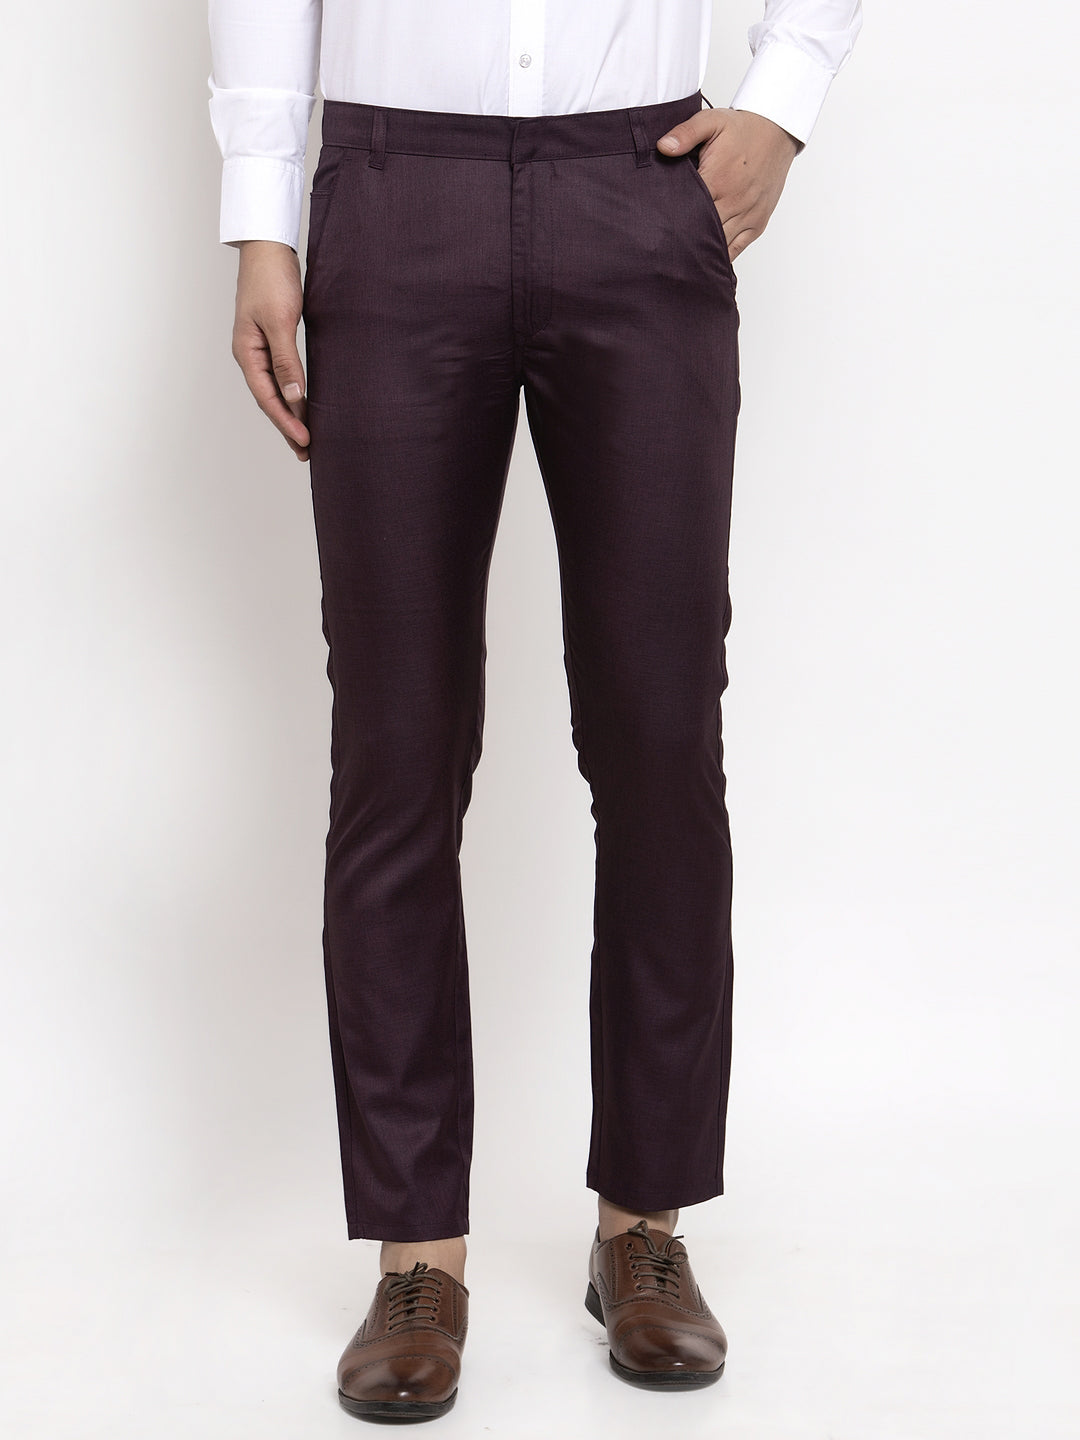 Men's Purple Cotton Solid Formal Trousers ( FGP 258Purple ) - Jainish